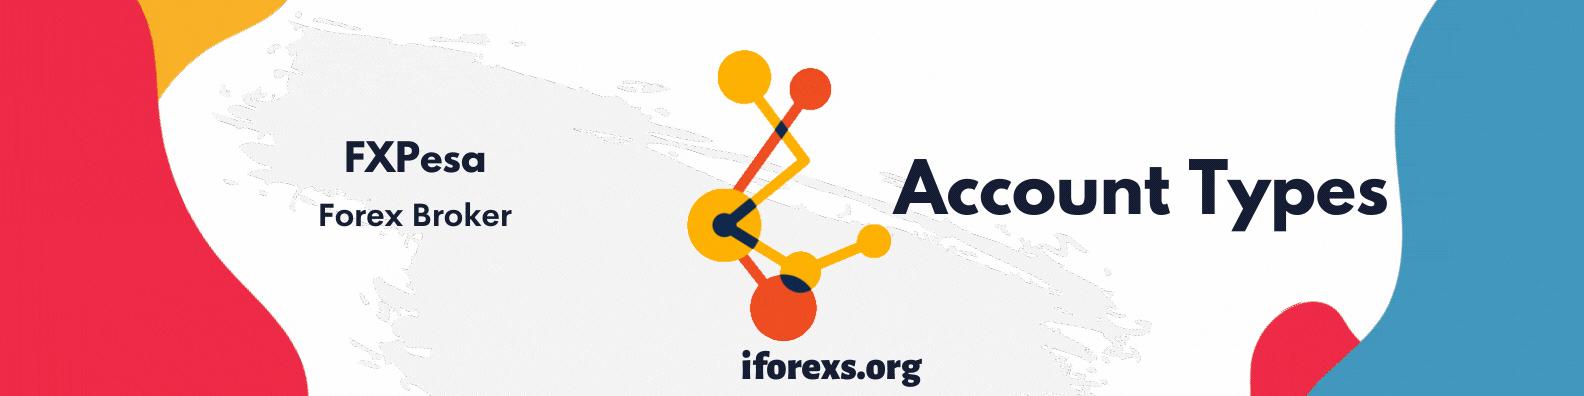 FXPesa Venue Account Types